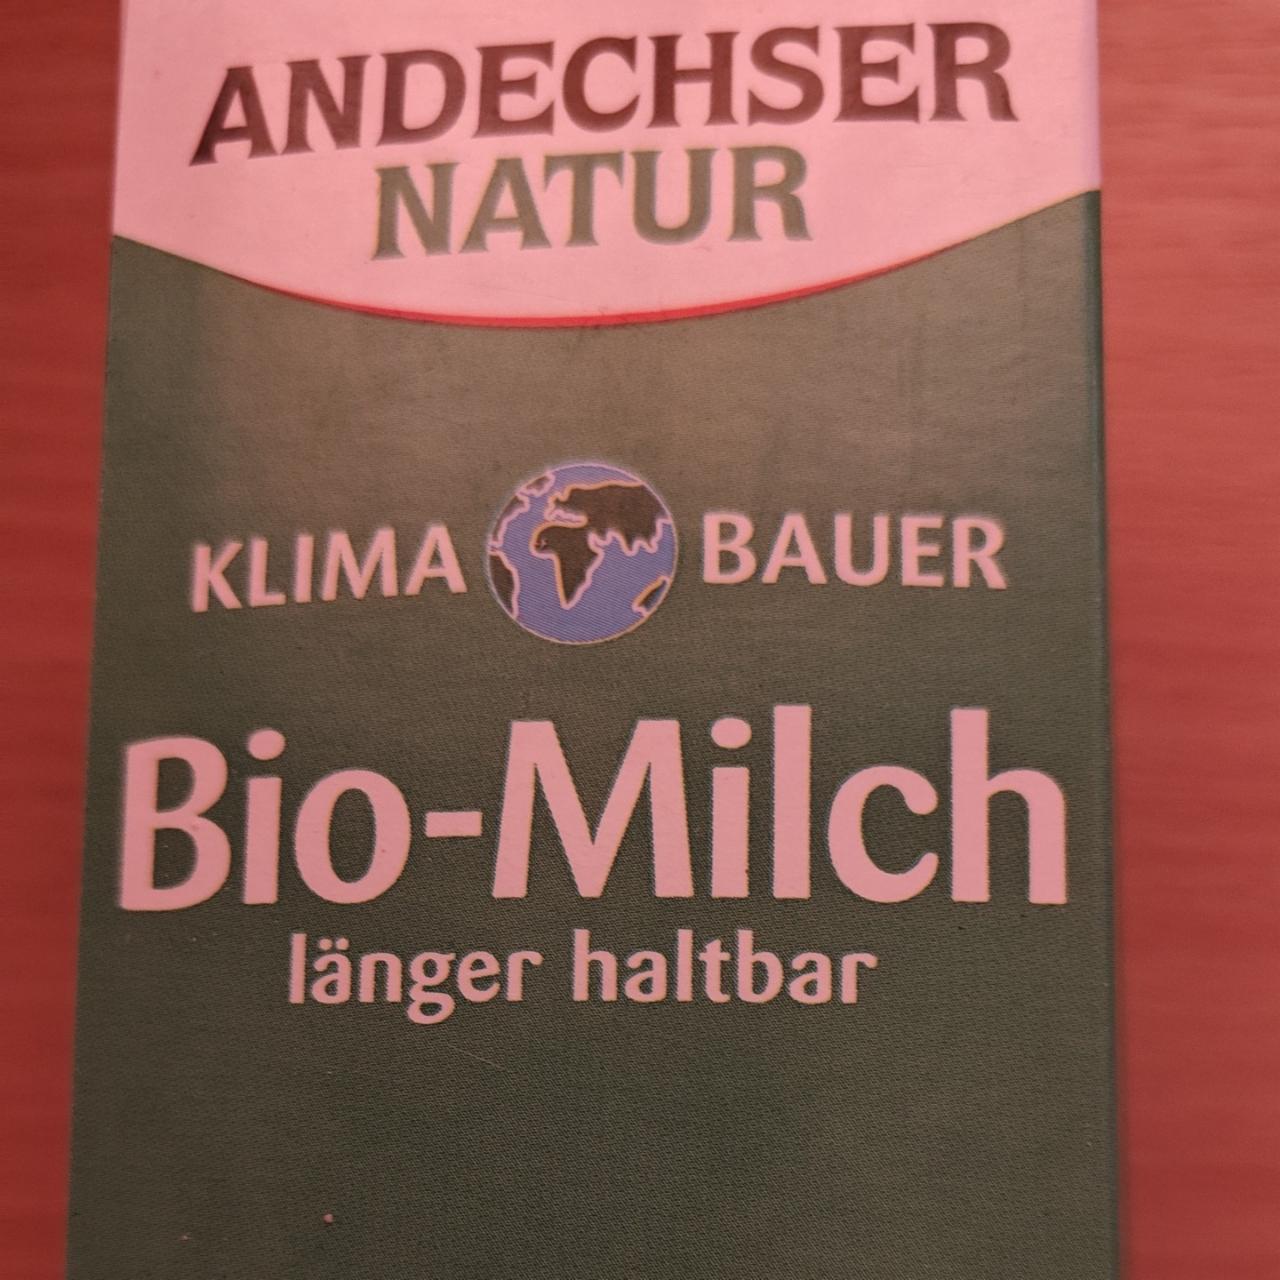 Fotografie - Bio-Milch länger haltbar 3,8% Andechser Natur